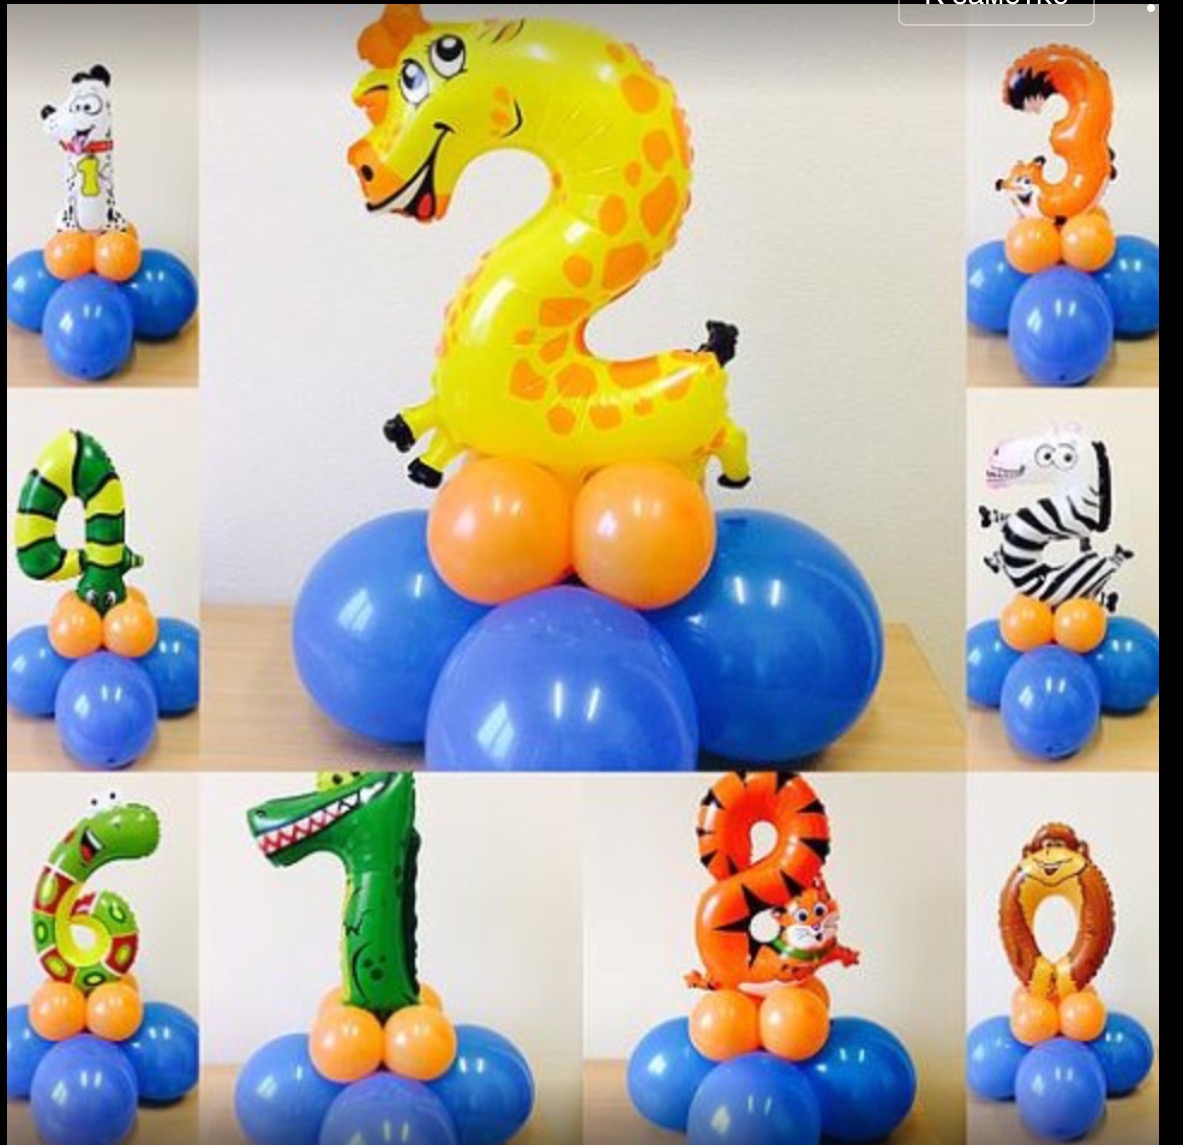 3 из воздушных шаров. Фигуры из воздушных шаров. Цифры из воздушных шаров. Цифра на подставке из шаров. Цифра из шаров на стойке.